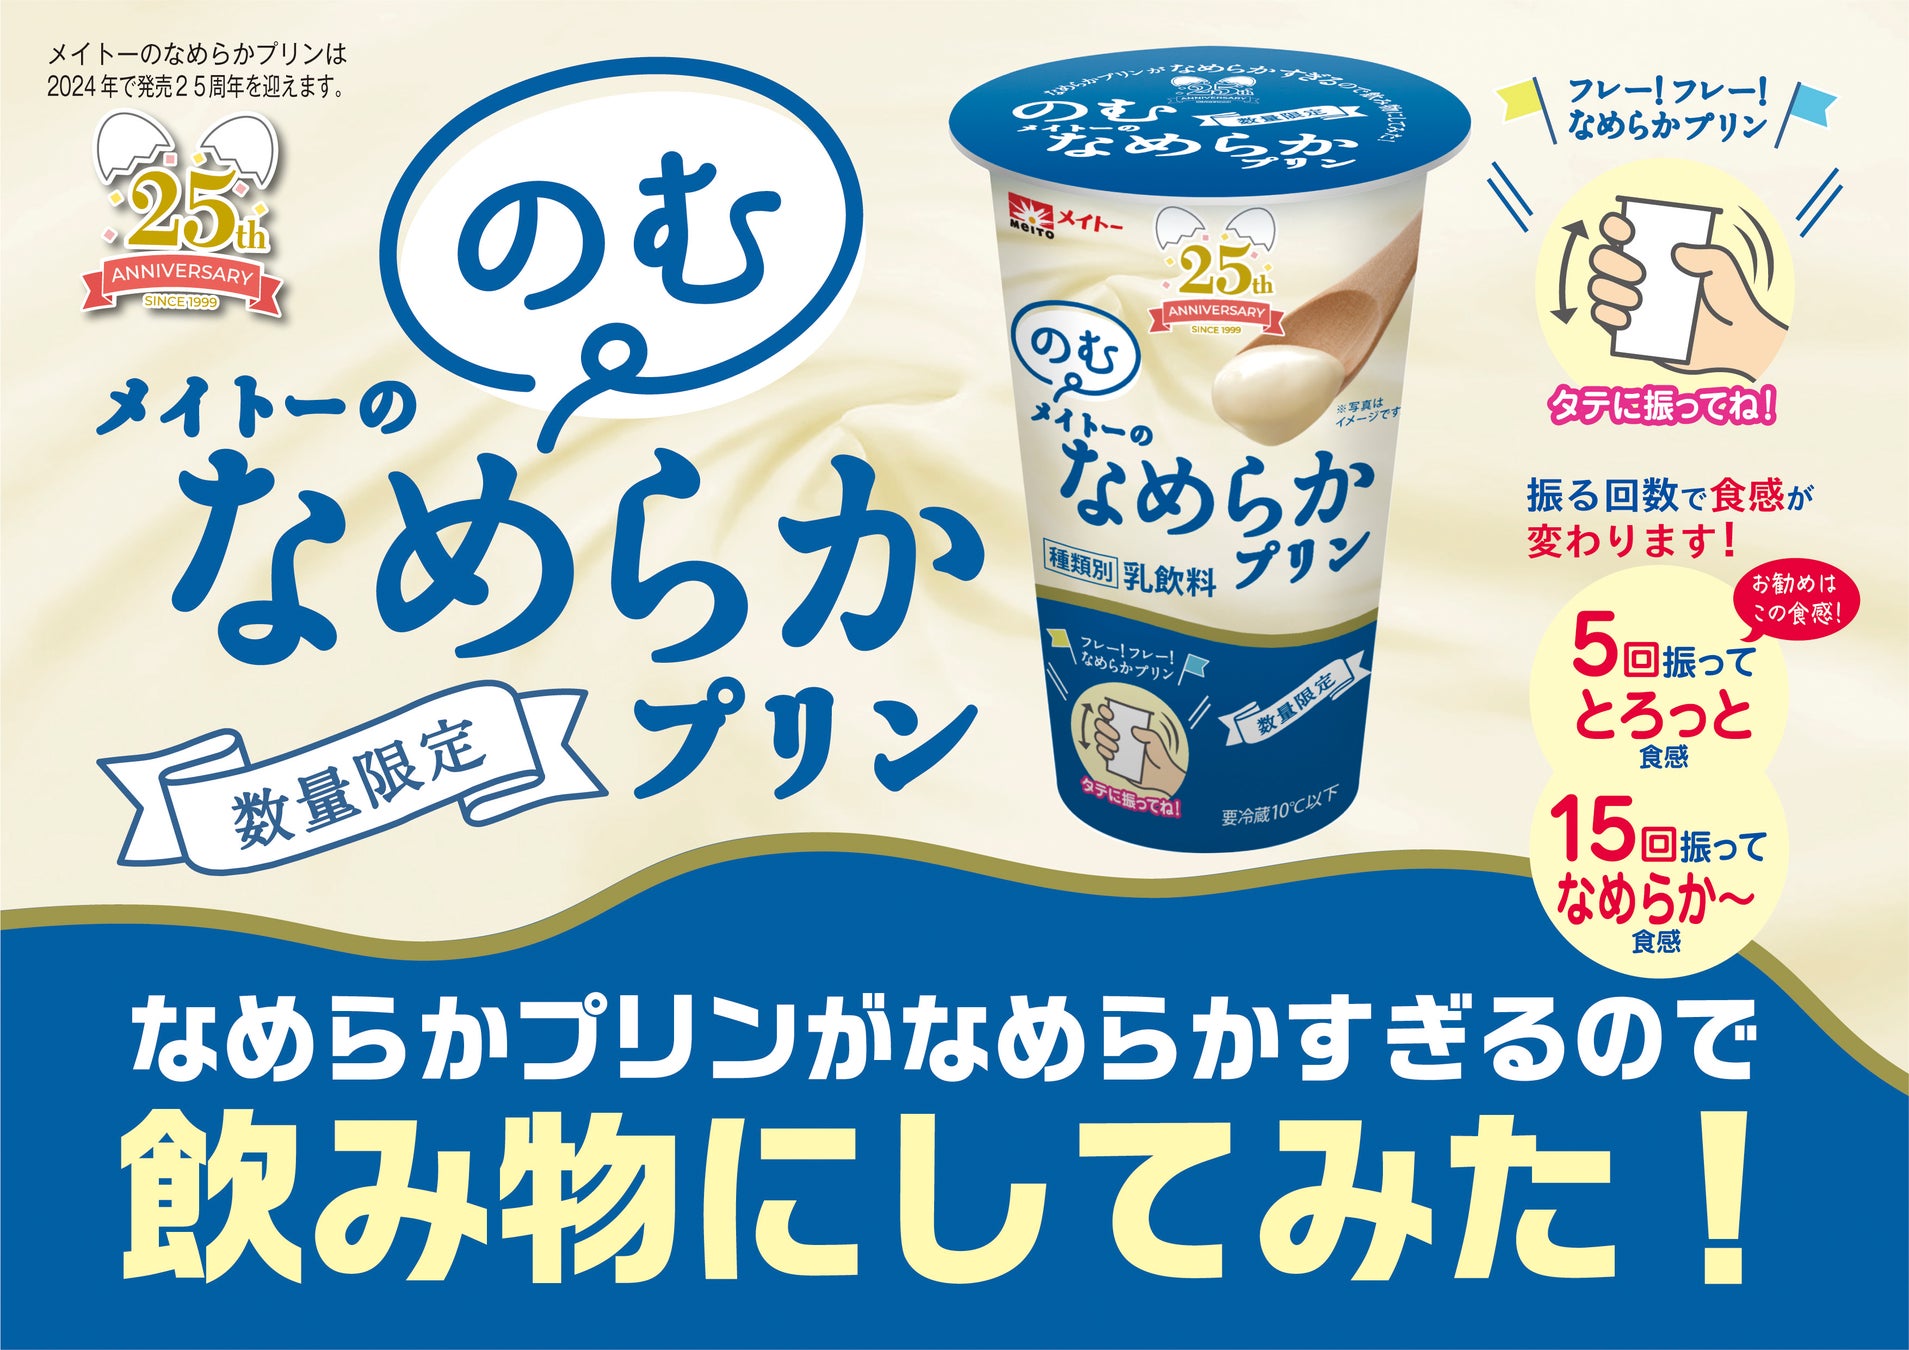 「フロンテラ スパークリング 缶」を2月27日(火)より全国で販売